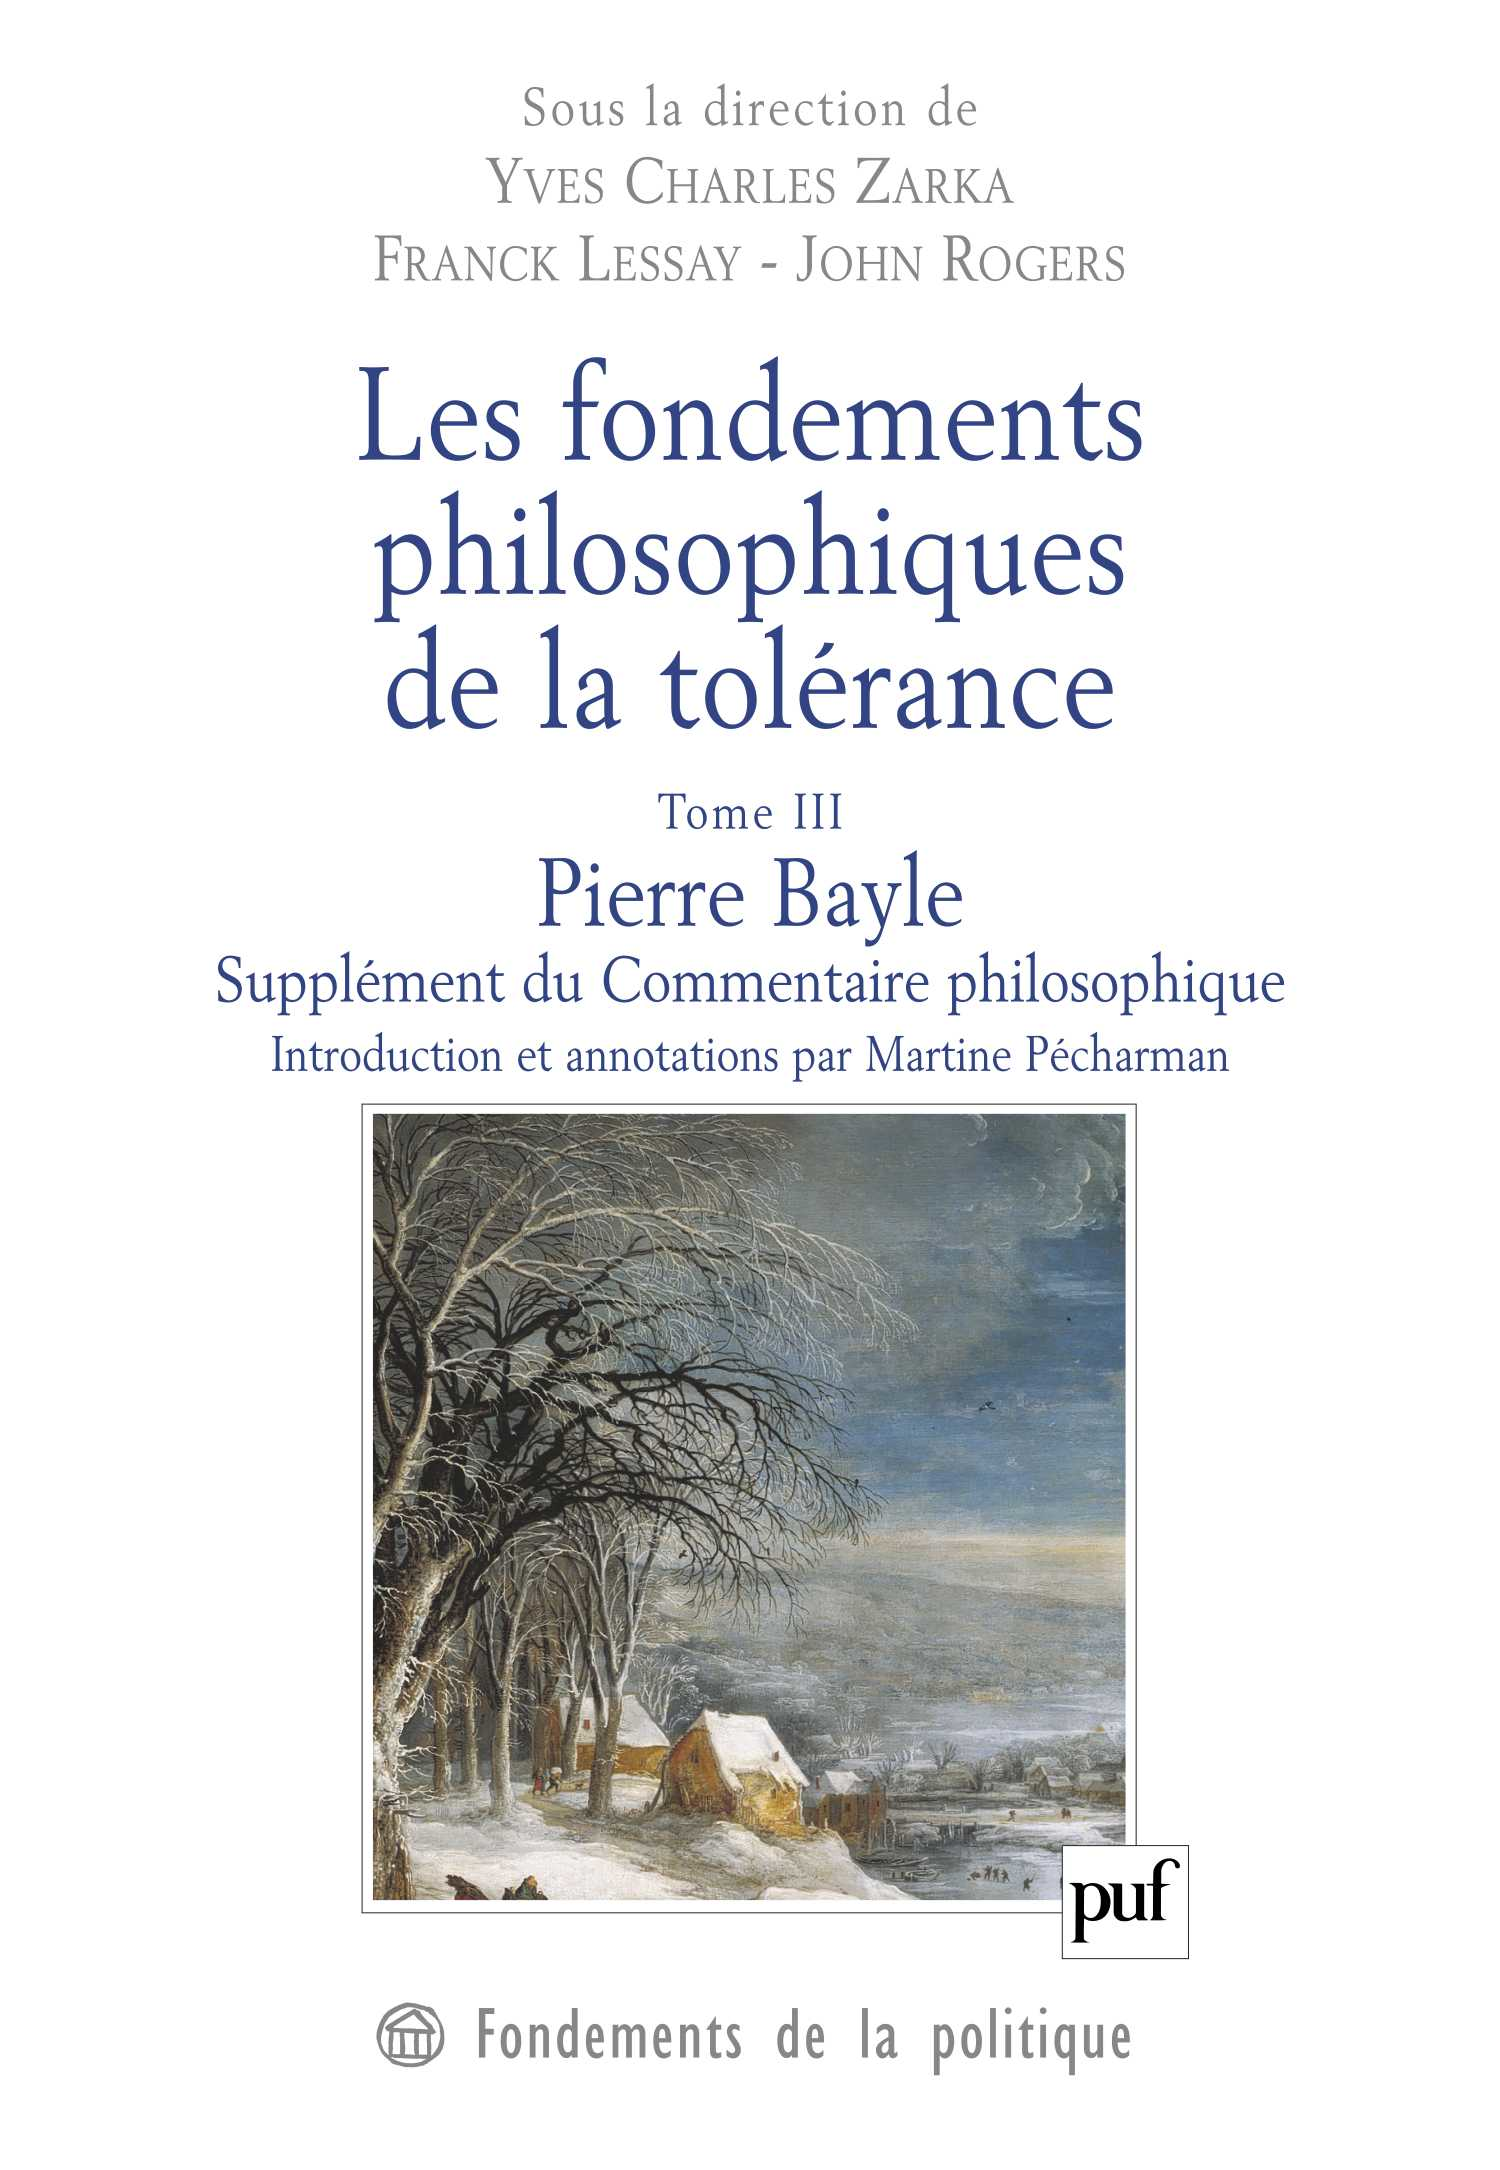 Les fondements philosophiques de la tolérance. Tome 3 De Franck Lessay, Yves Charles Zarka et John Rogers - Presses Universitaires de France